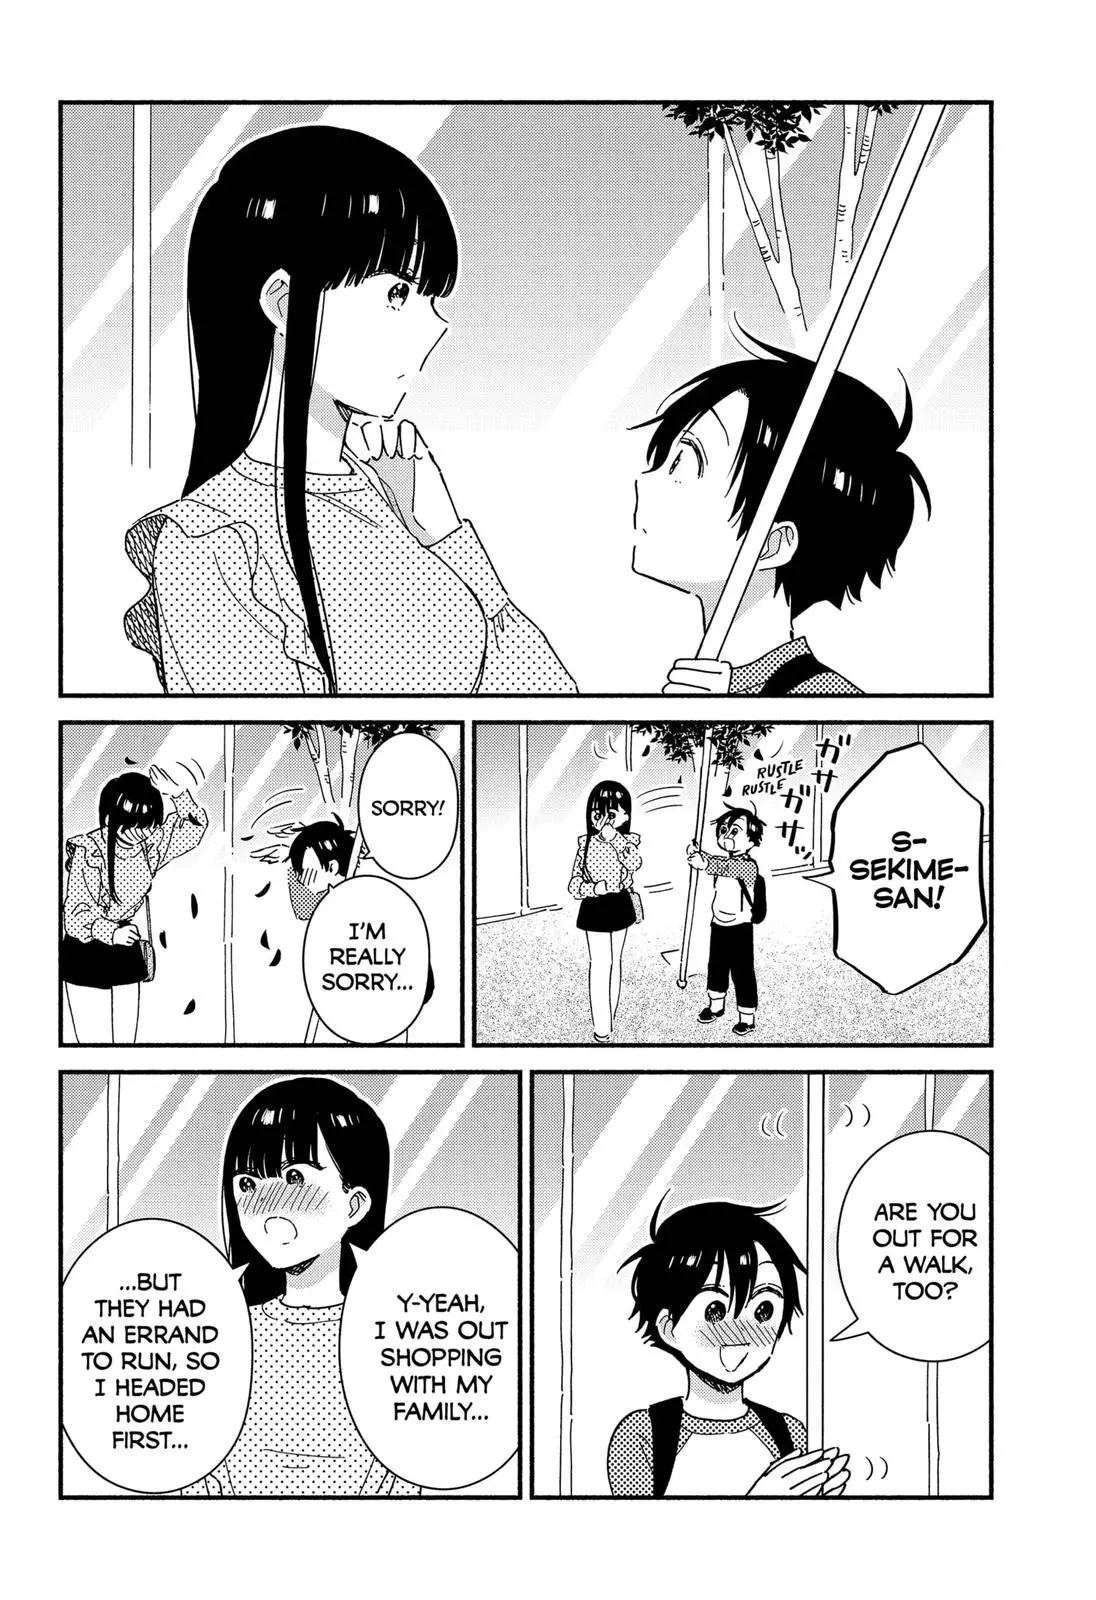 Don't Blush, Sekime-San! - 17 page 4